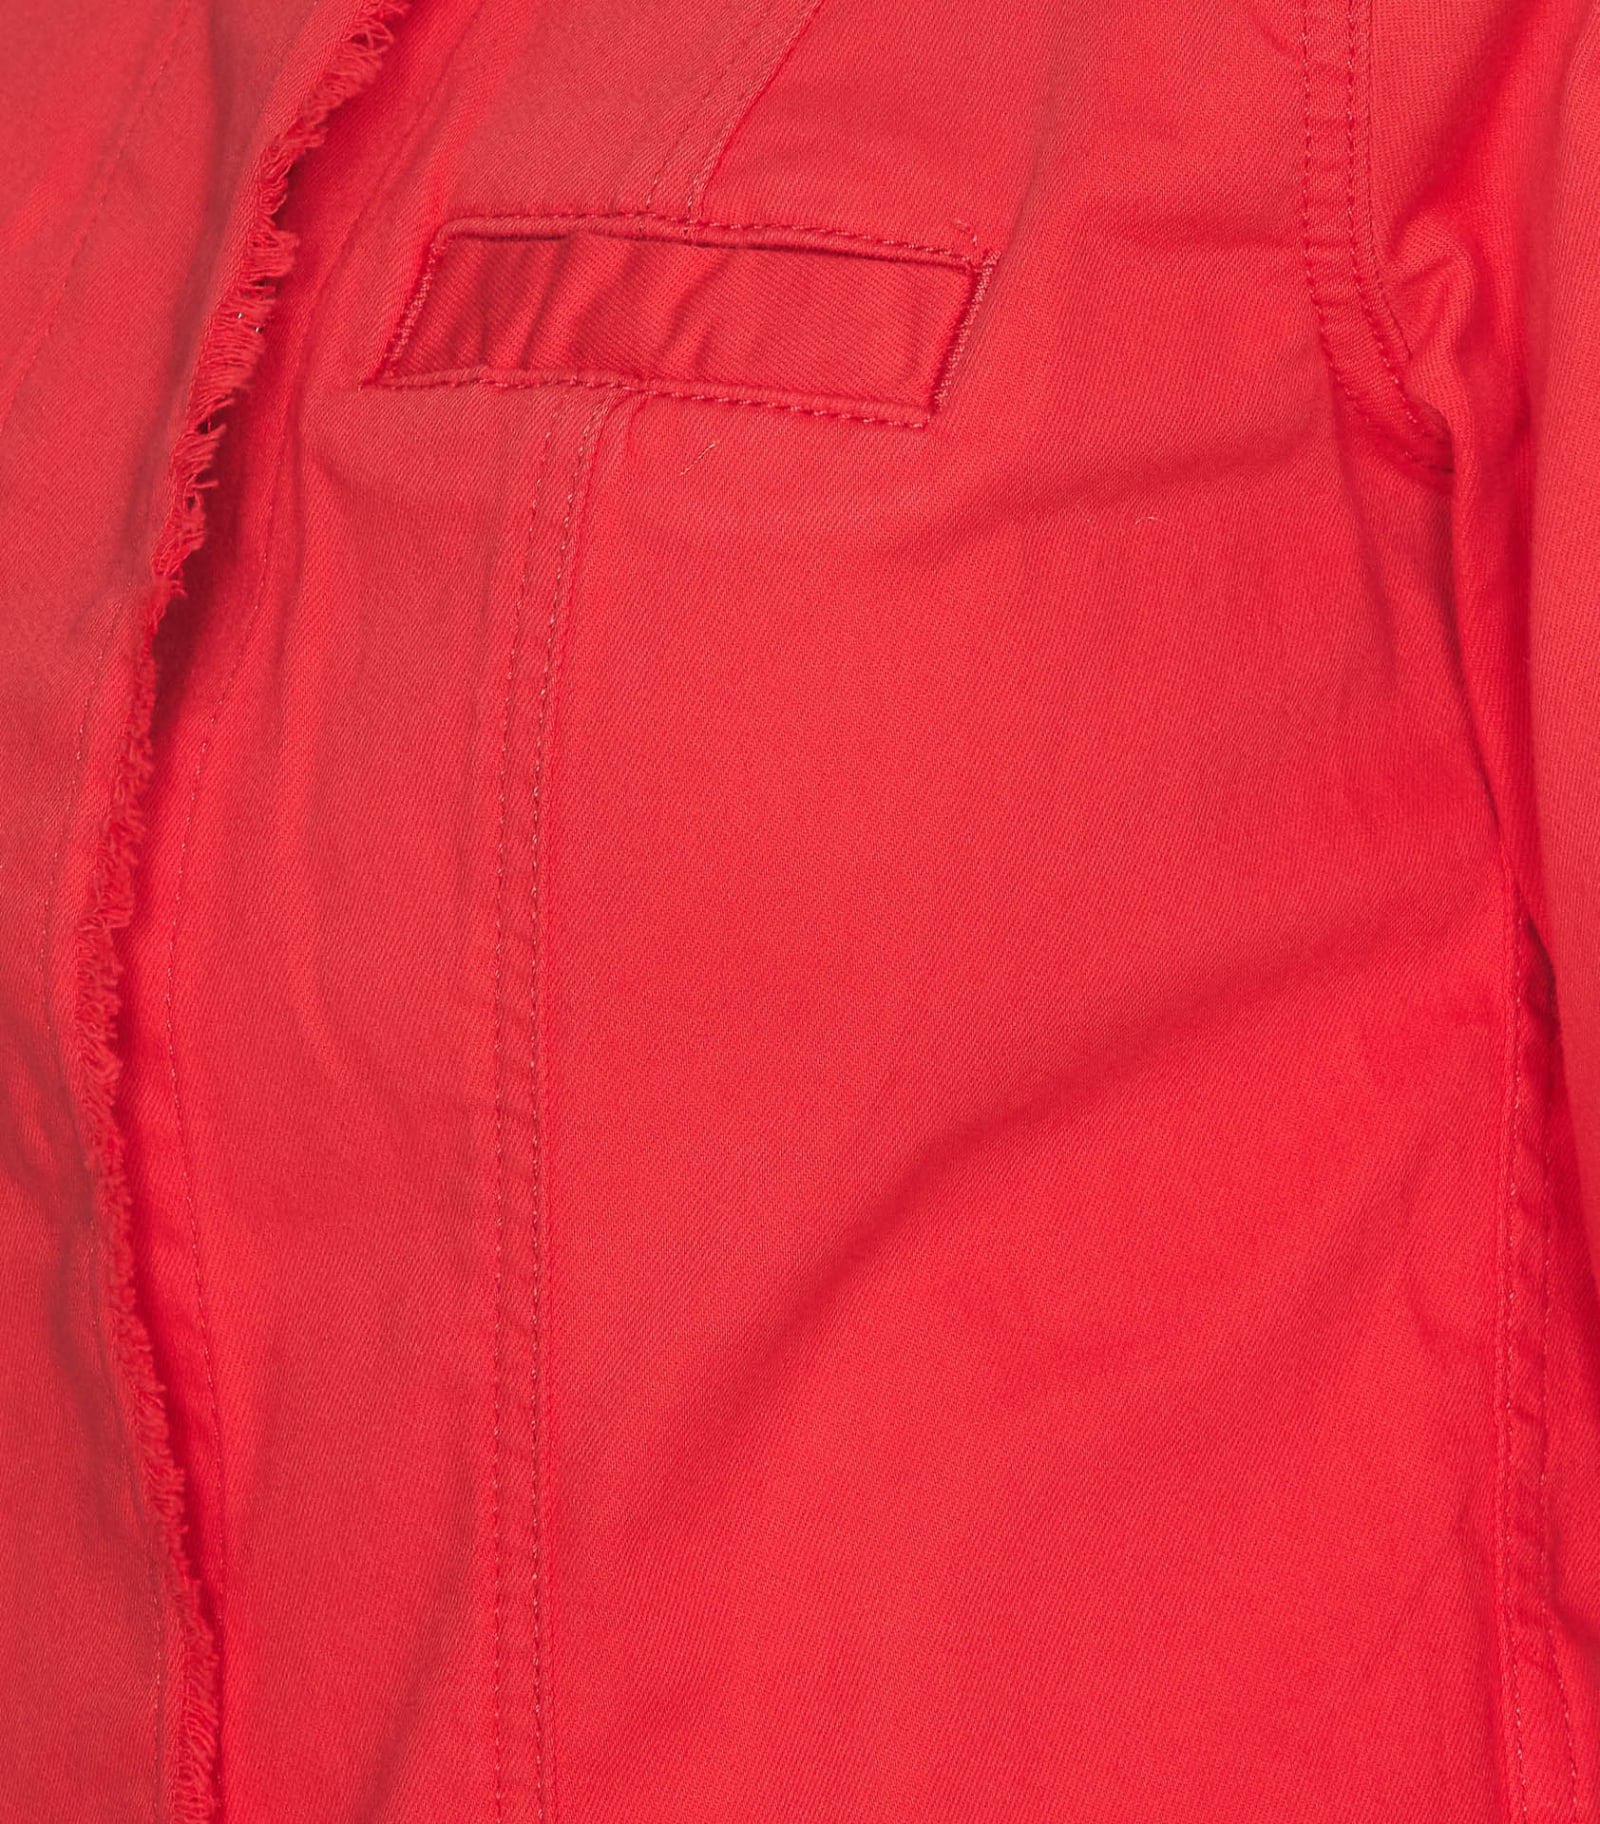 Liu •jo Jacket In Red | ModeSens